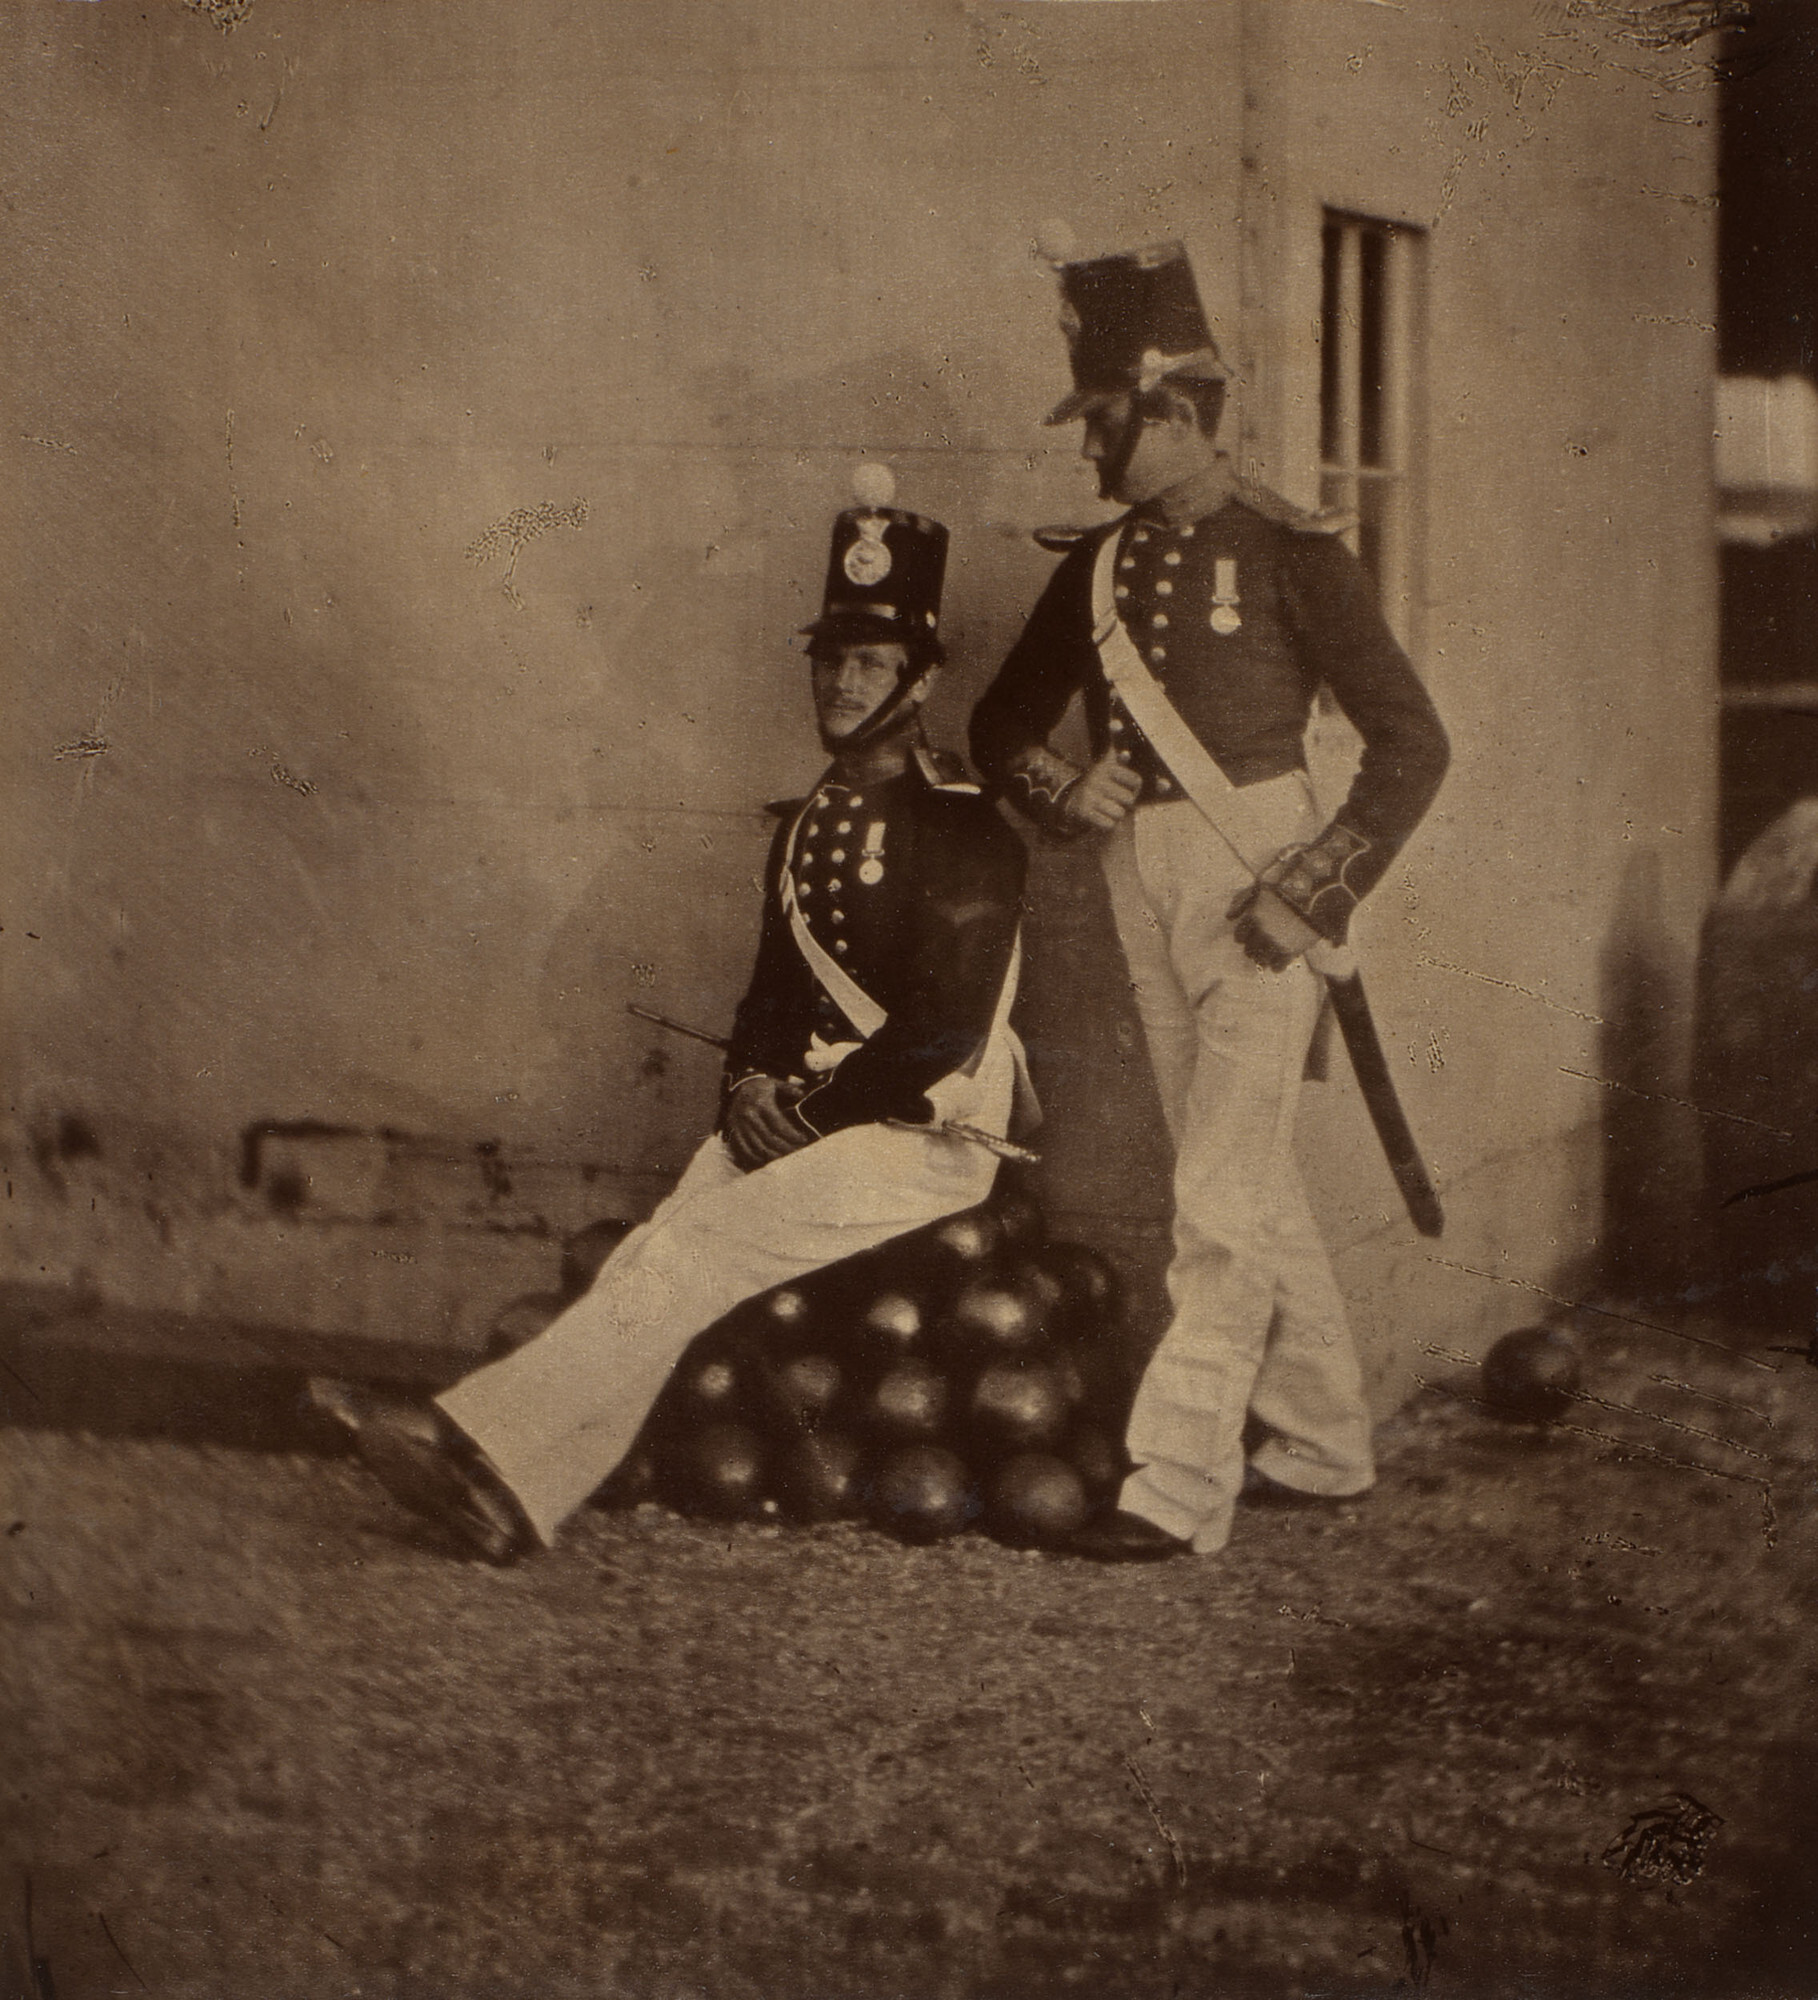 Наводчик Сэмюэл Смит и бомбардир Уильям Хьюлетт из Королевской морской артиллерии, 1855. Фотограф Томас Ричард Уильямс